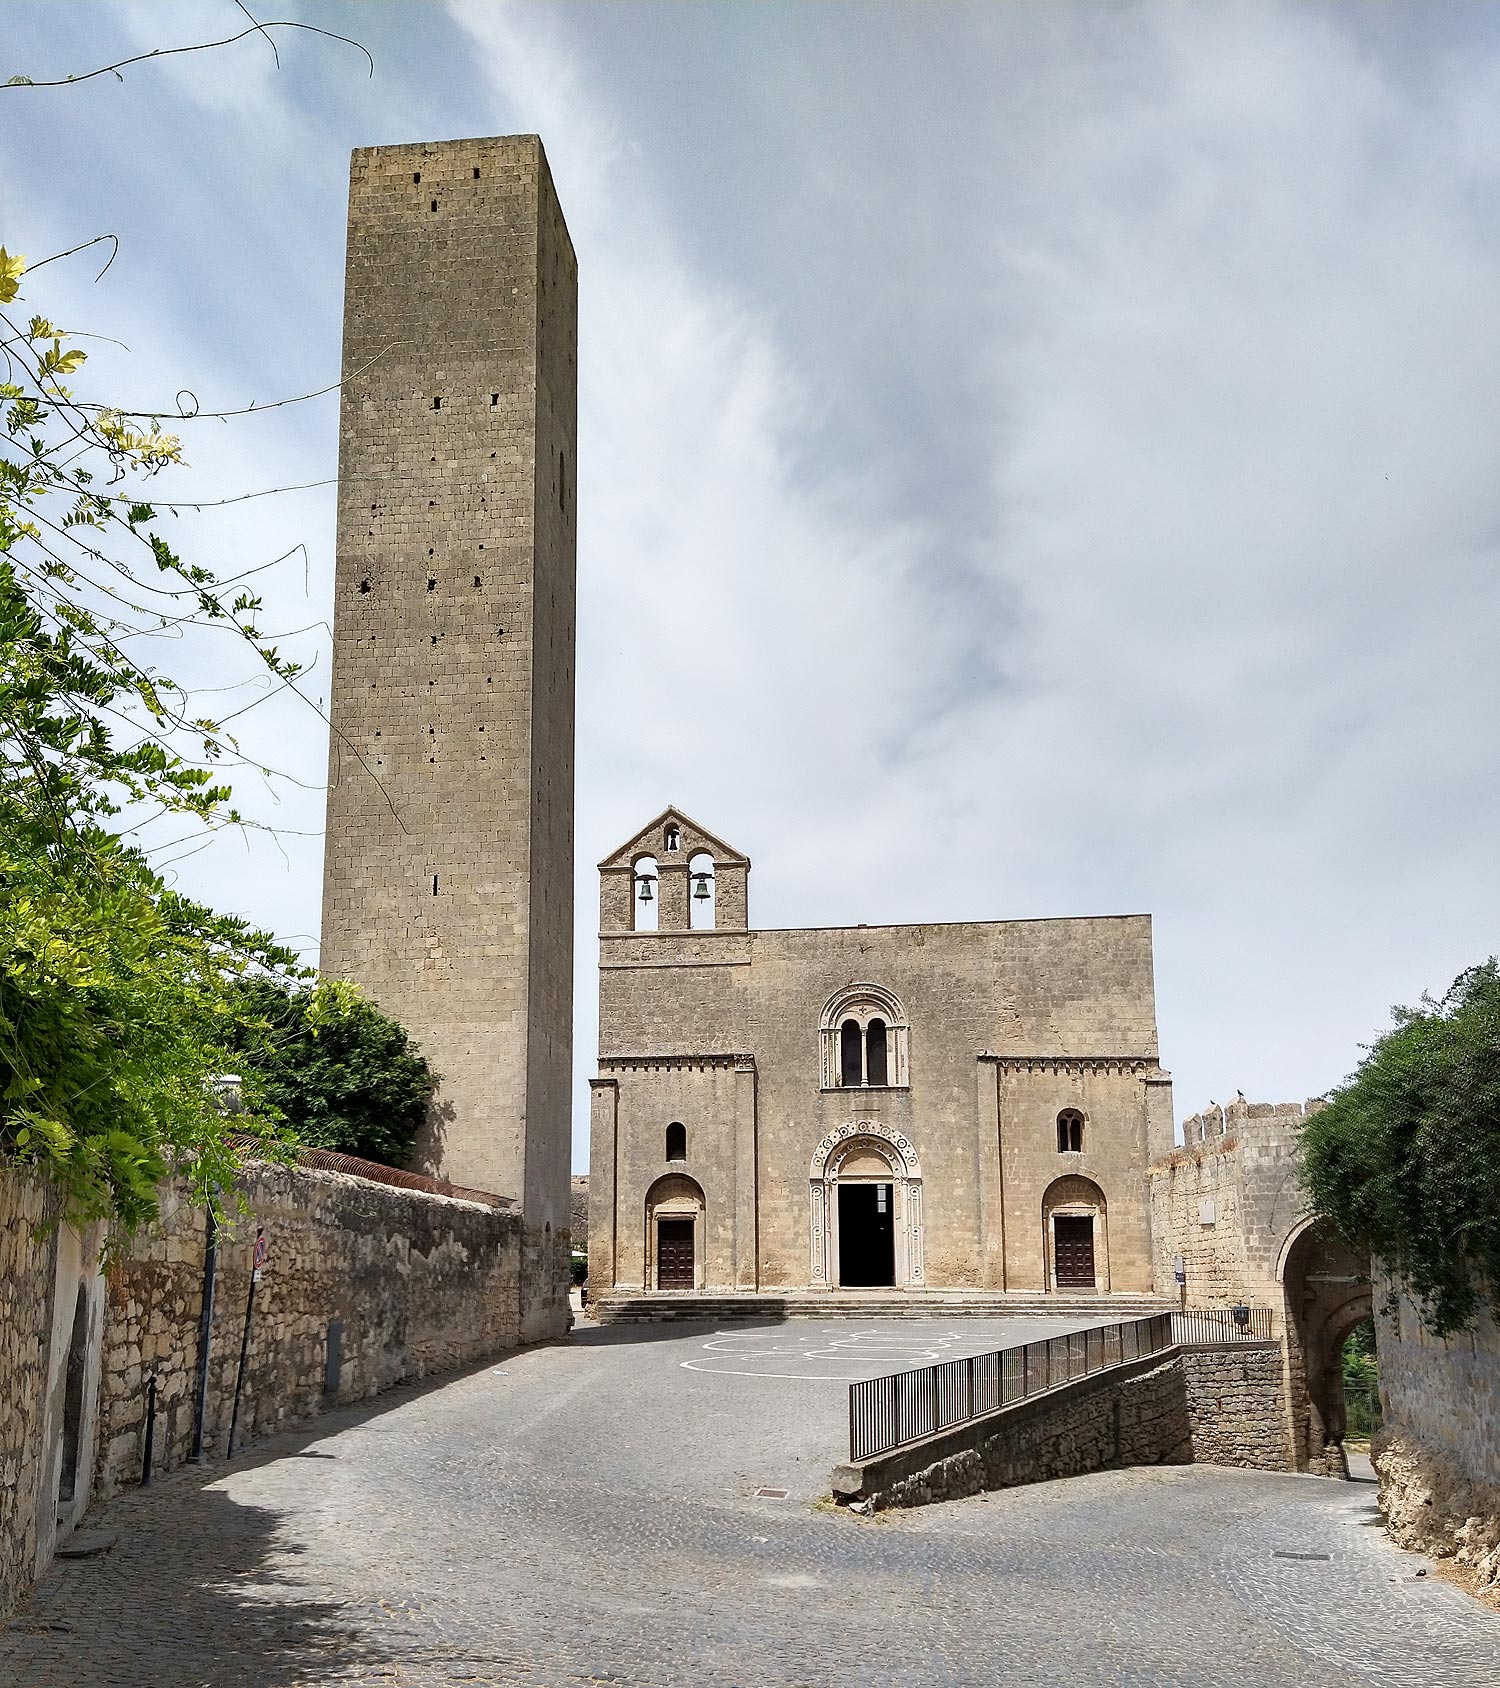 The church of Santa Maria in Castello